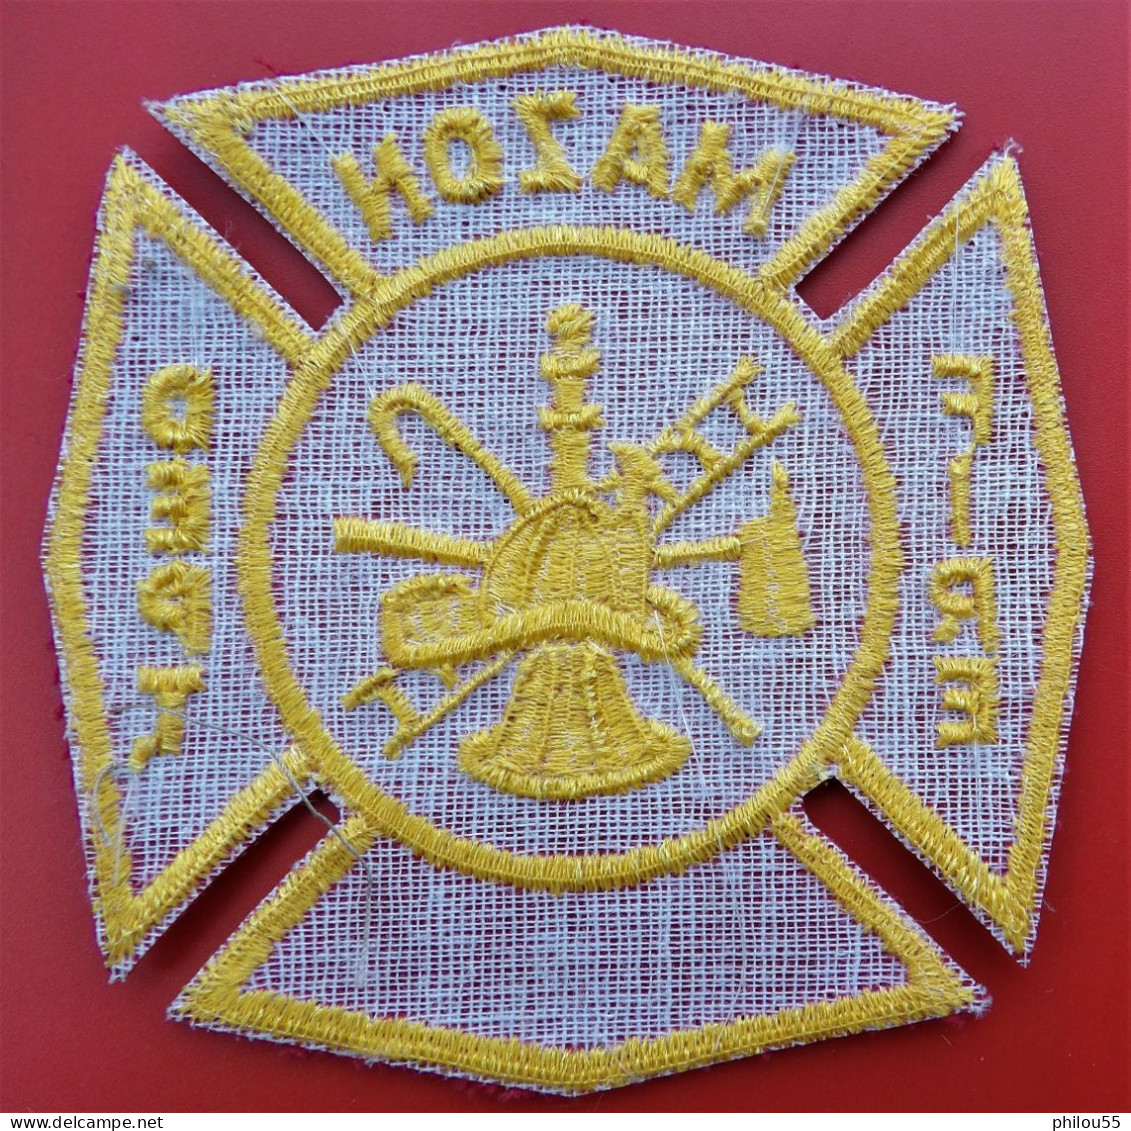 Insigne Tissu POMPIER USA MAZON FIRE DEPARTEMENT - Firemen